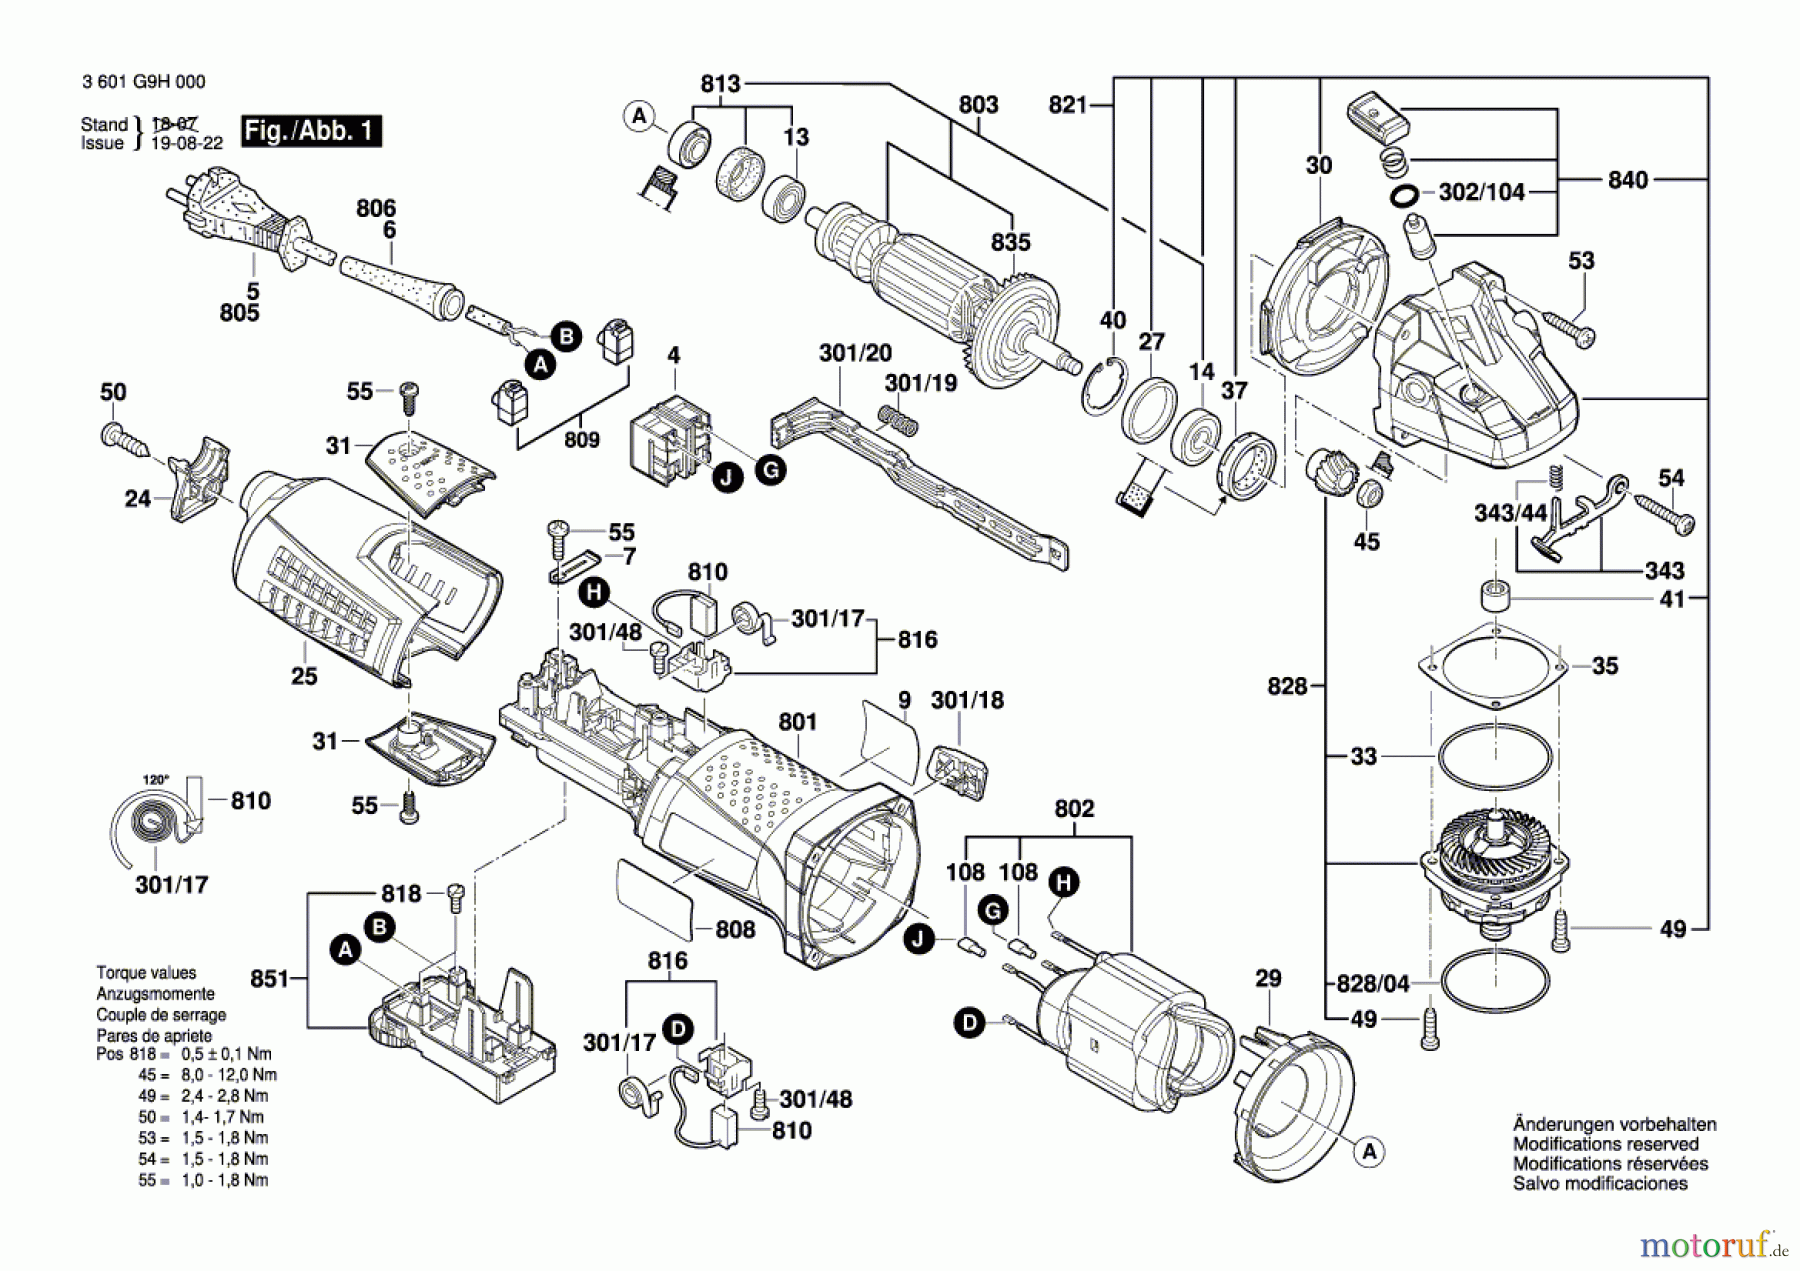  Bosch Werkzeug Winkelschleifer GWS 17-125 CIT Seite 1